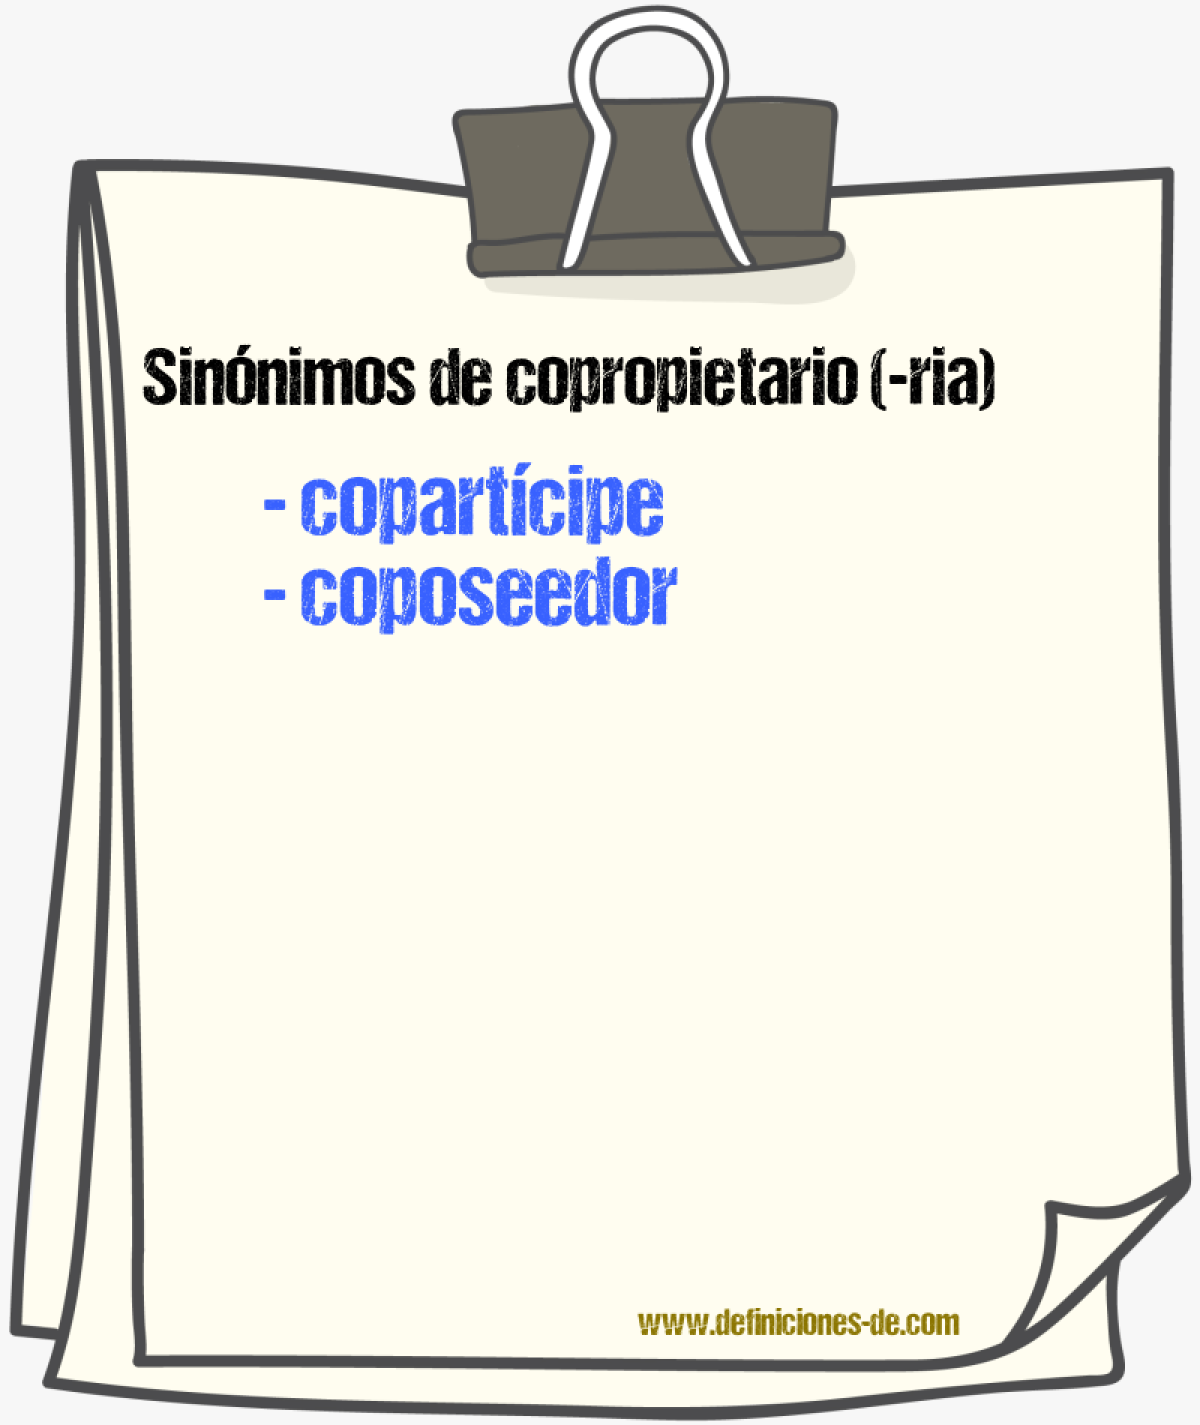 Sinónimos de copropietario